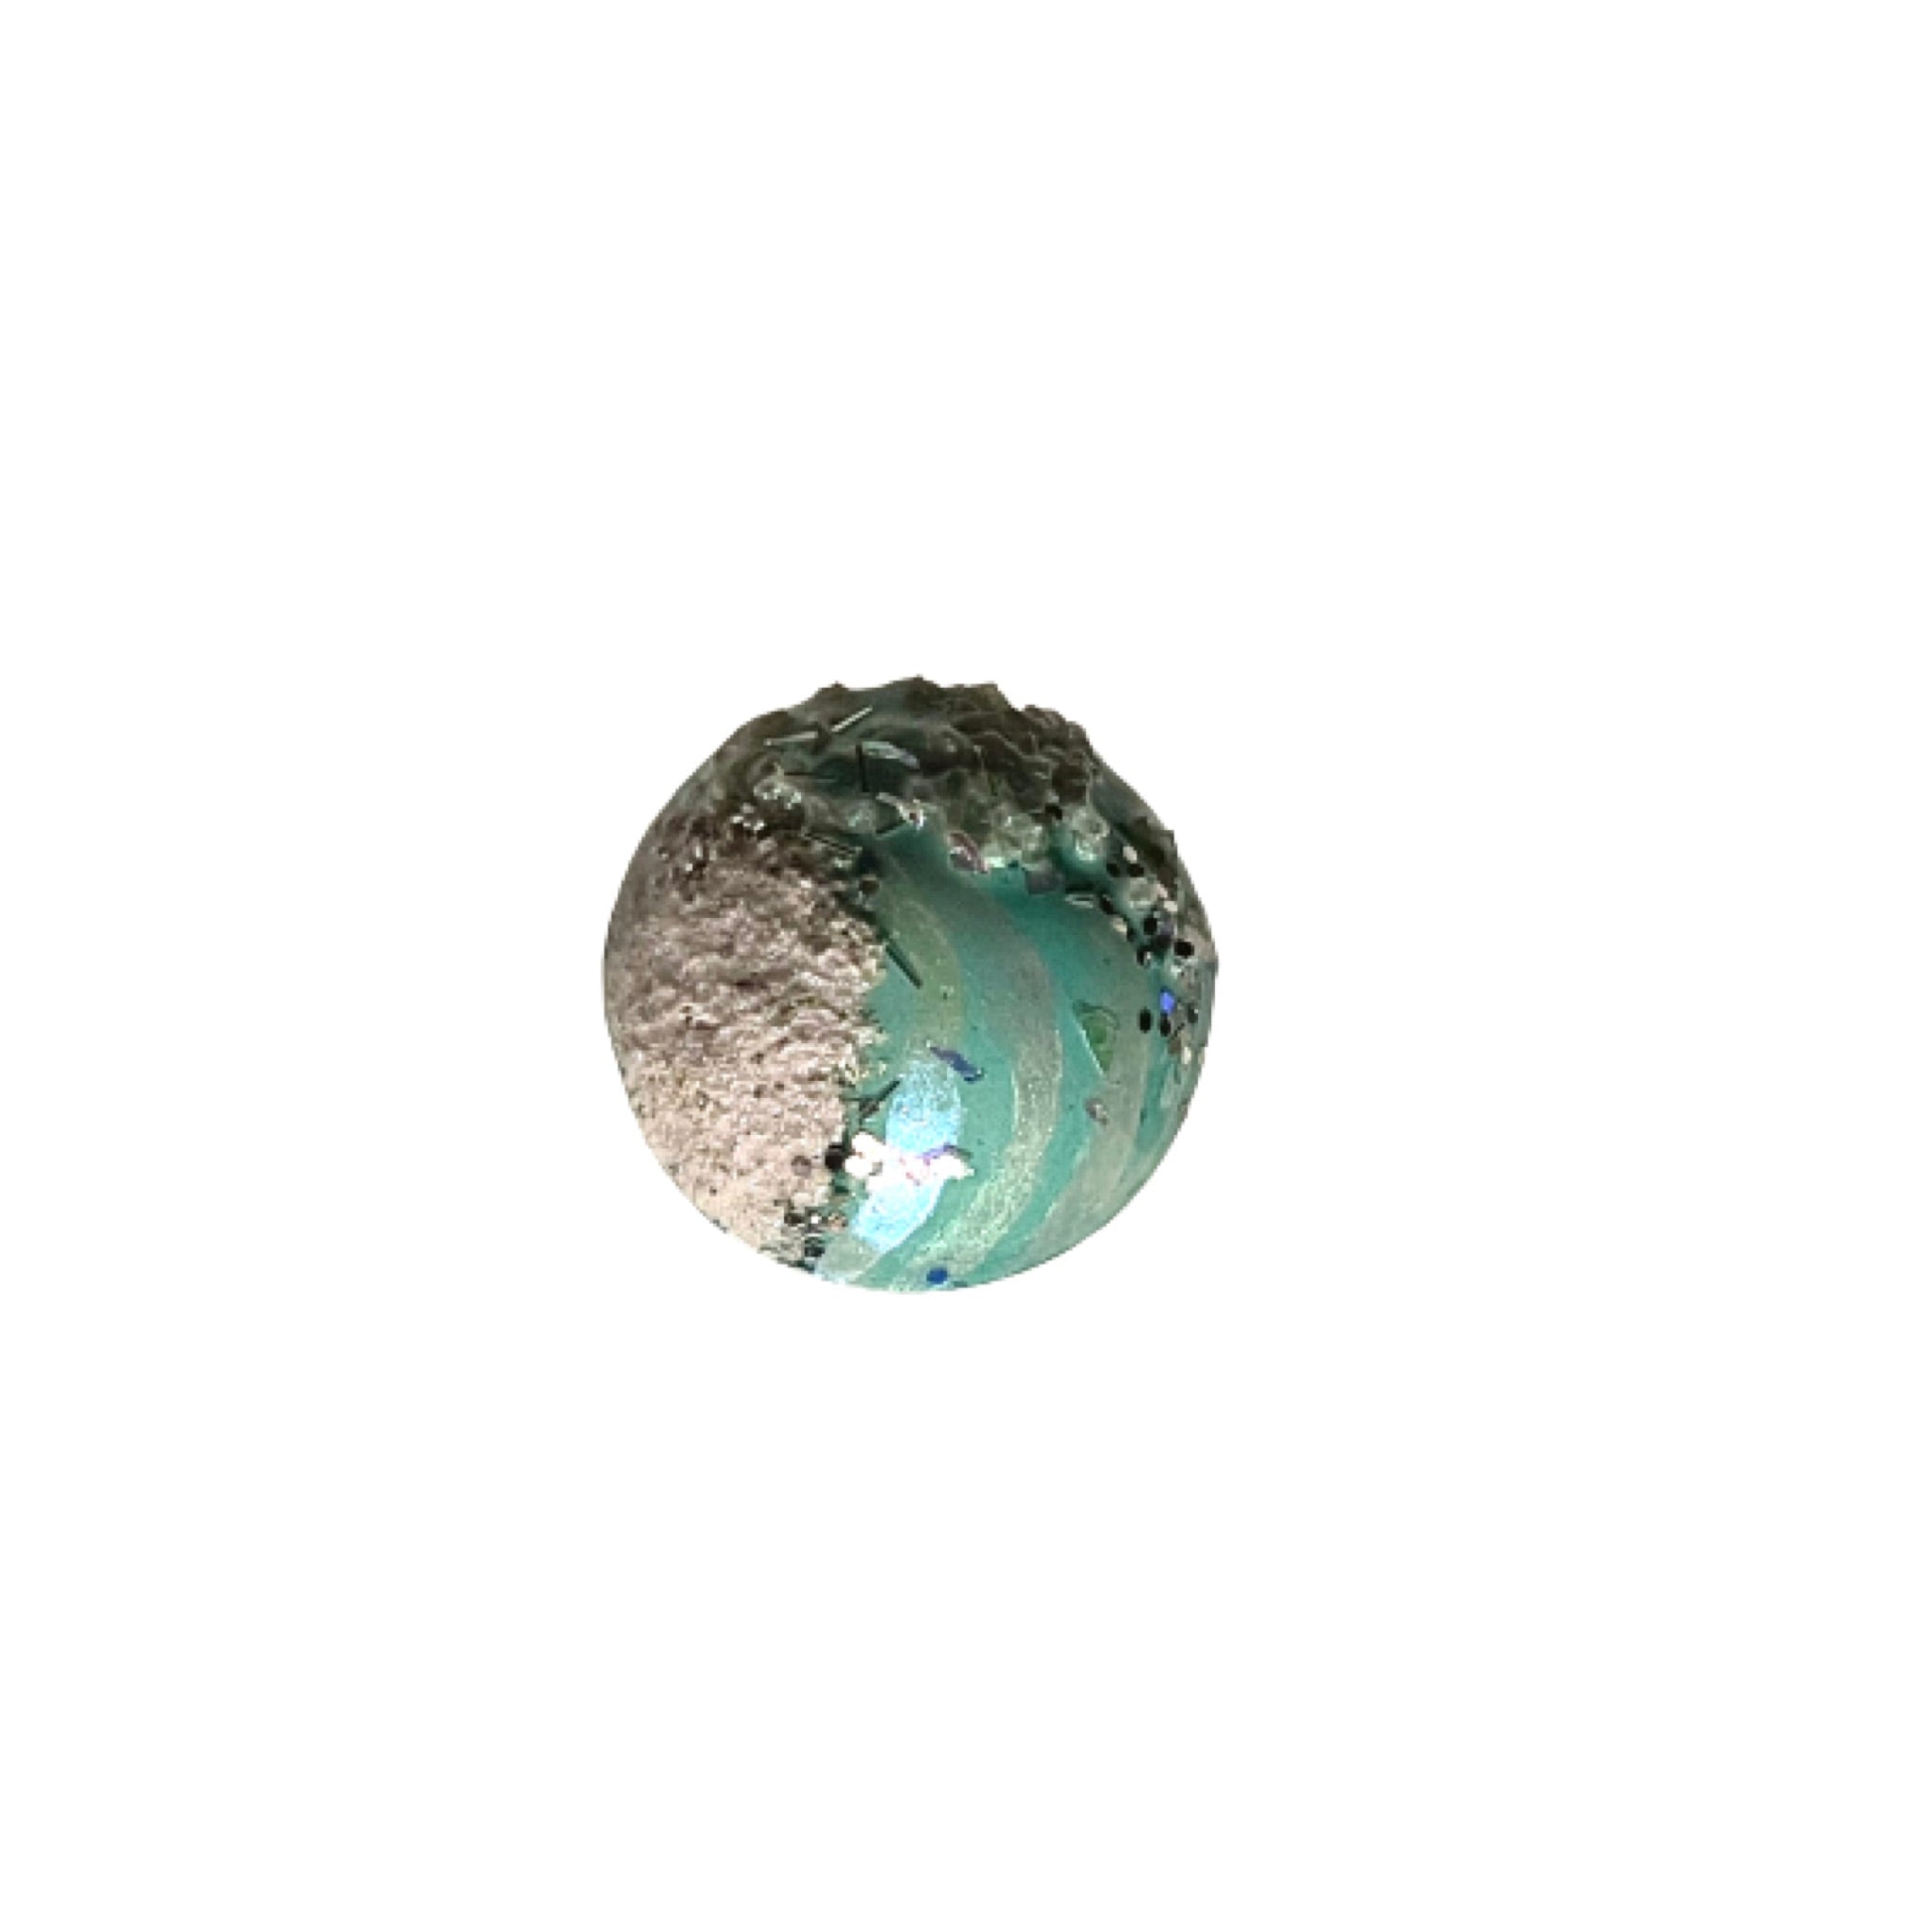 Aquatic dreamscape pin